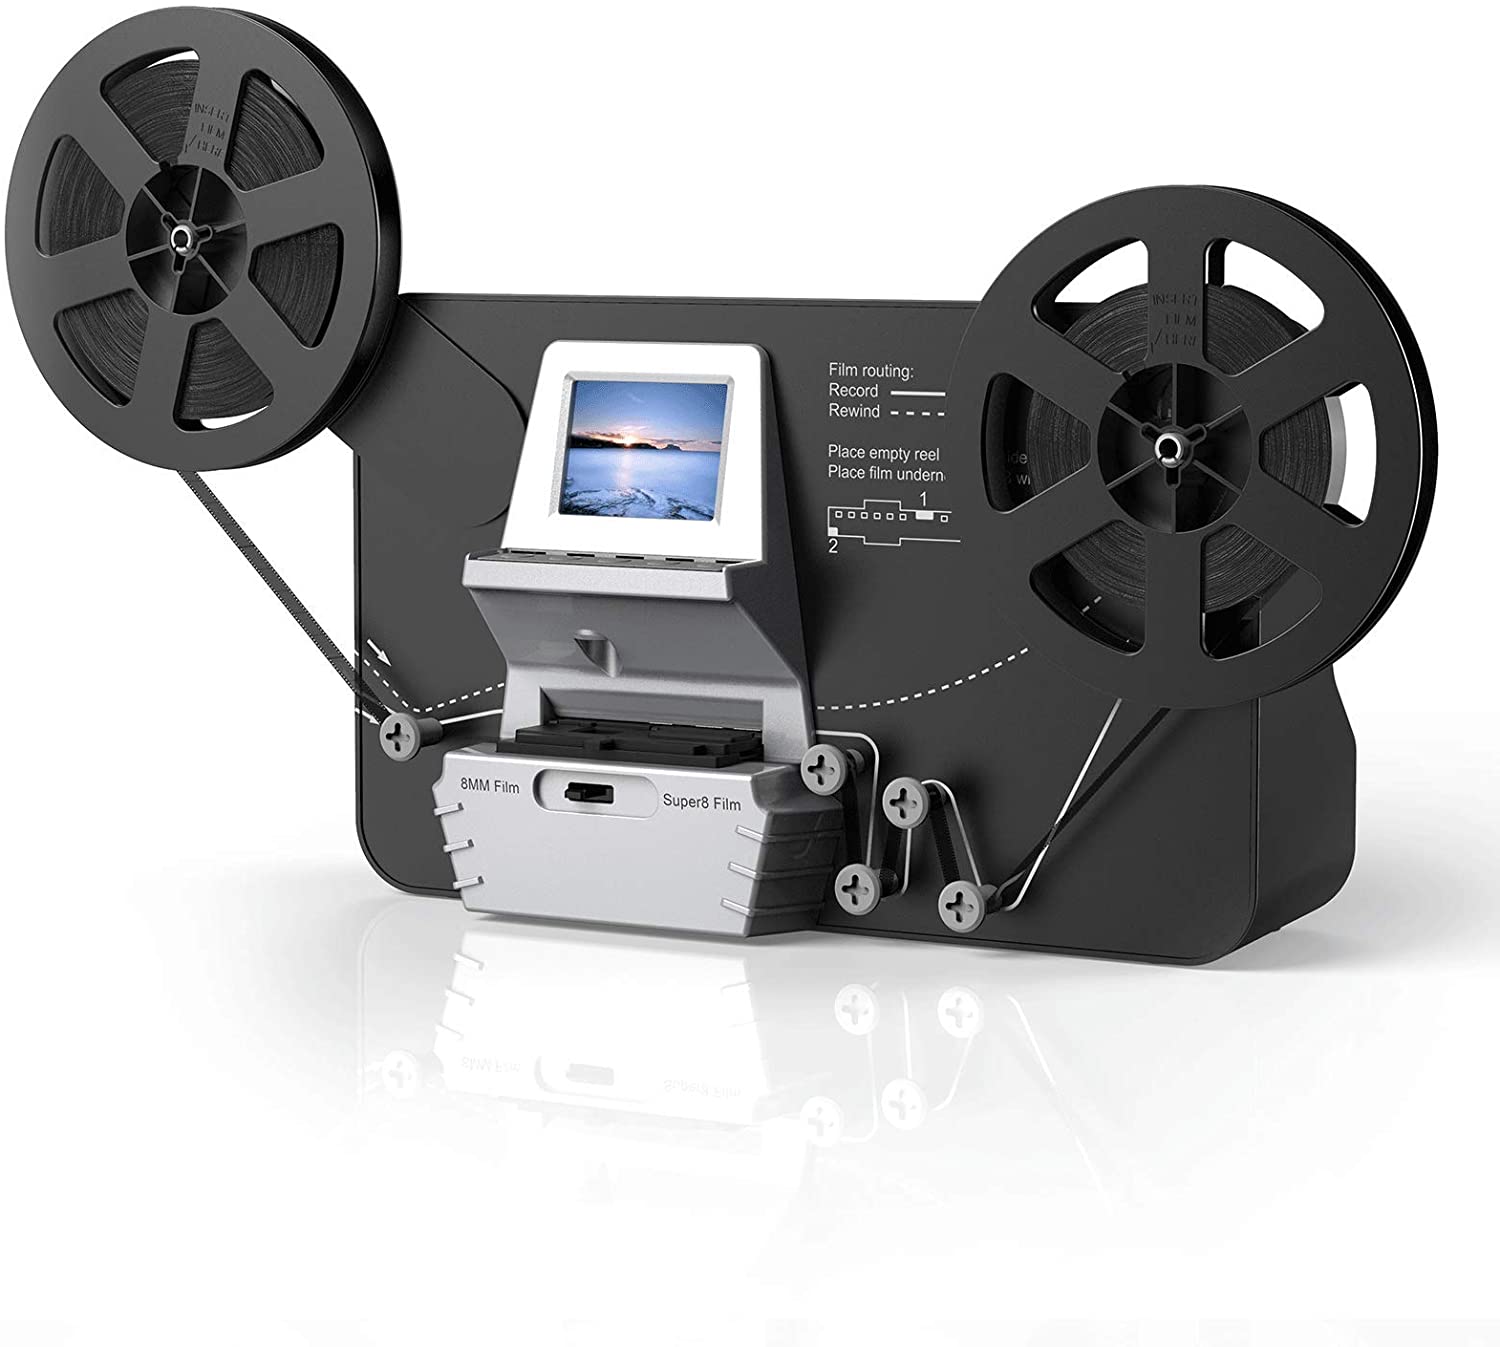 Super 8/8mm Digital Film Scanner